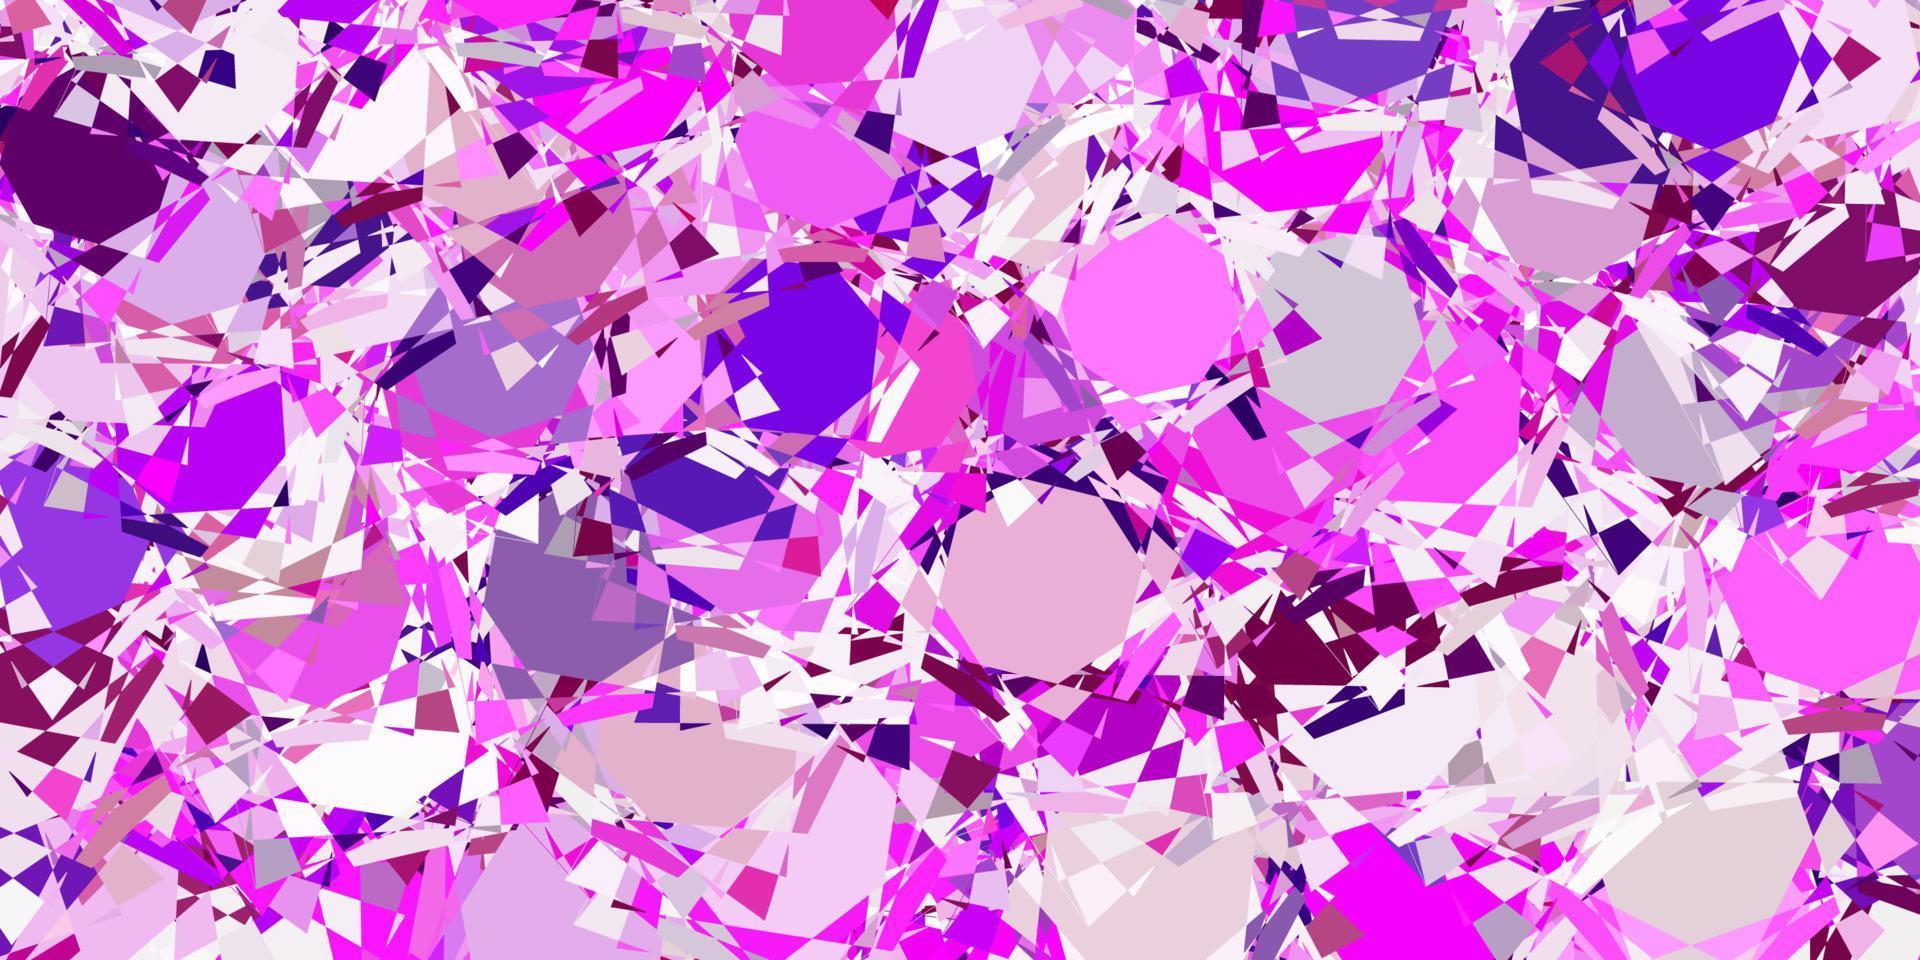 hellviolette, rosa Vektortextur mit zufälligen Dreiecken. vektor